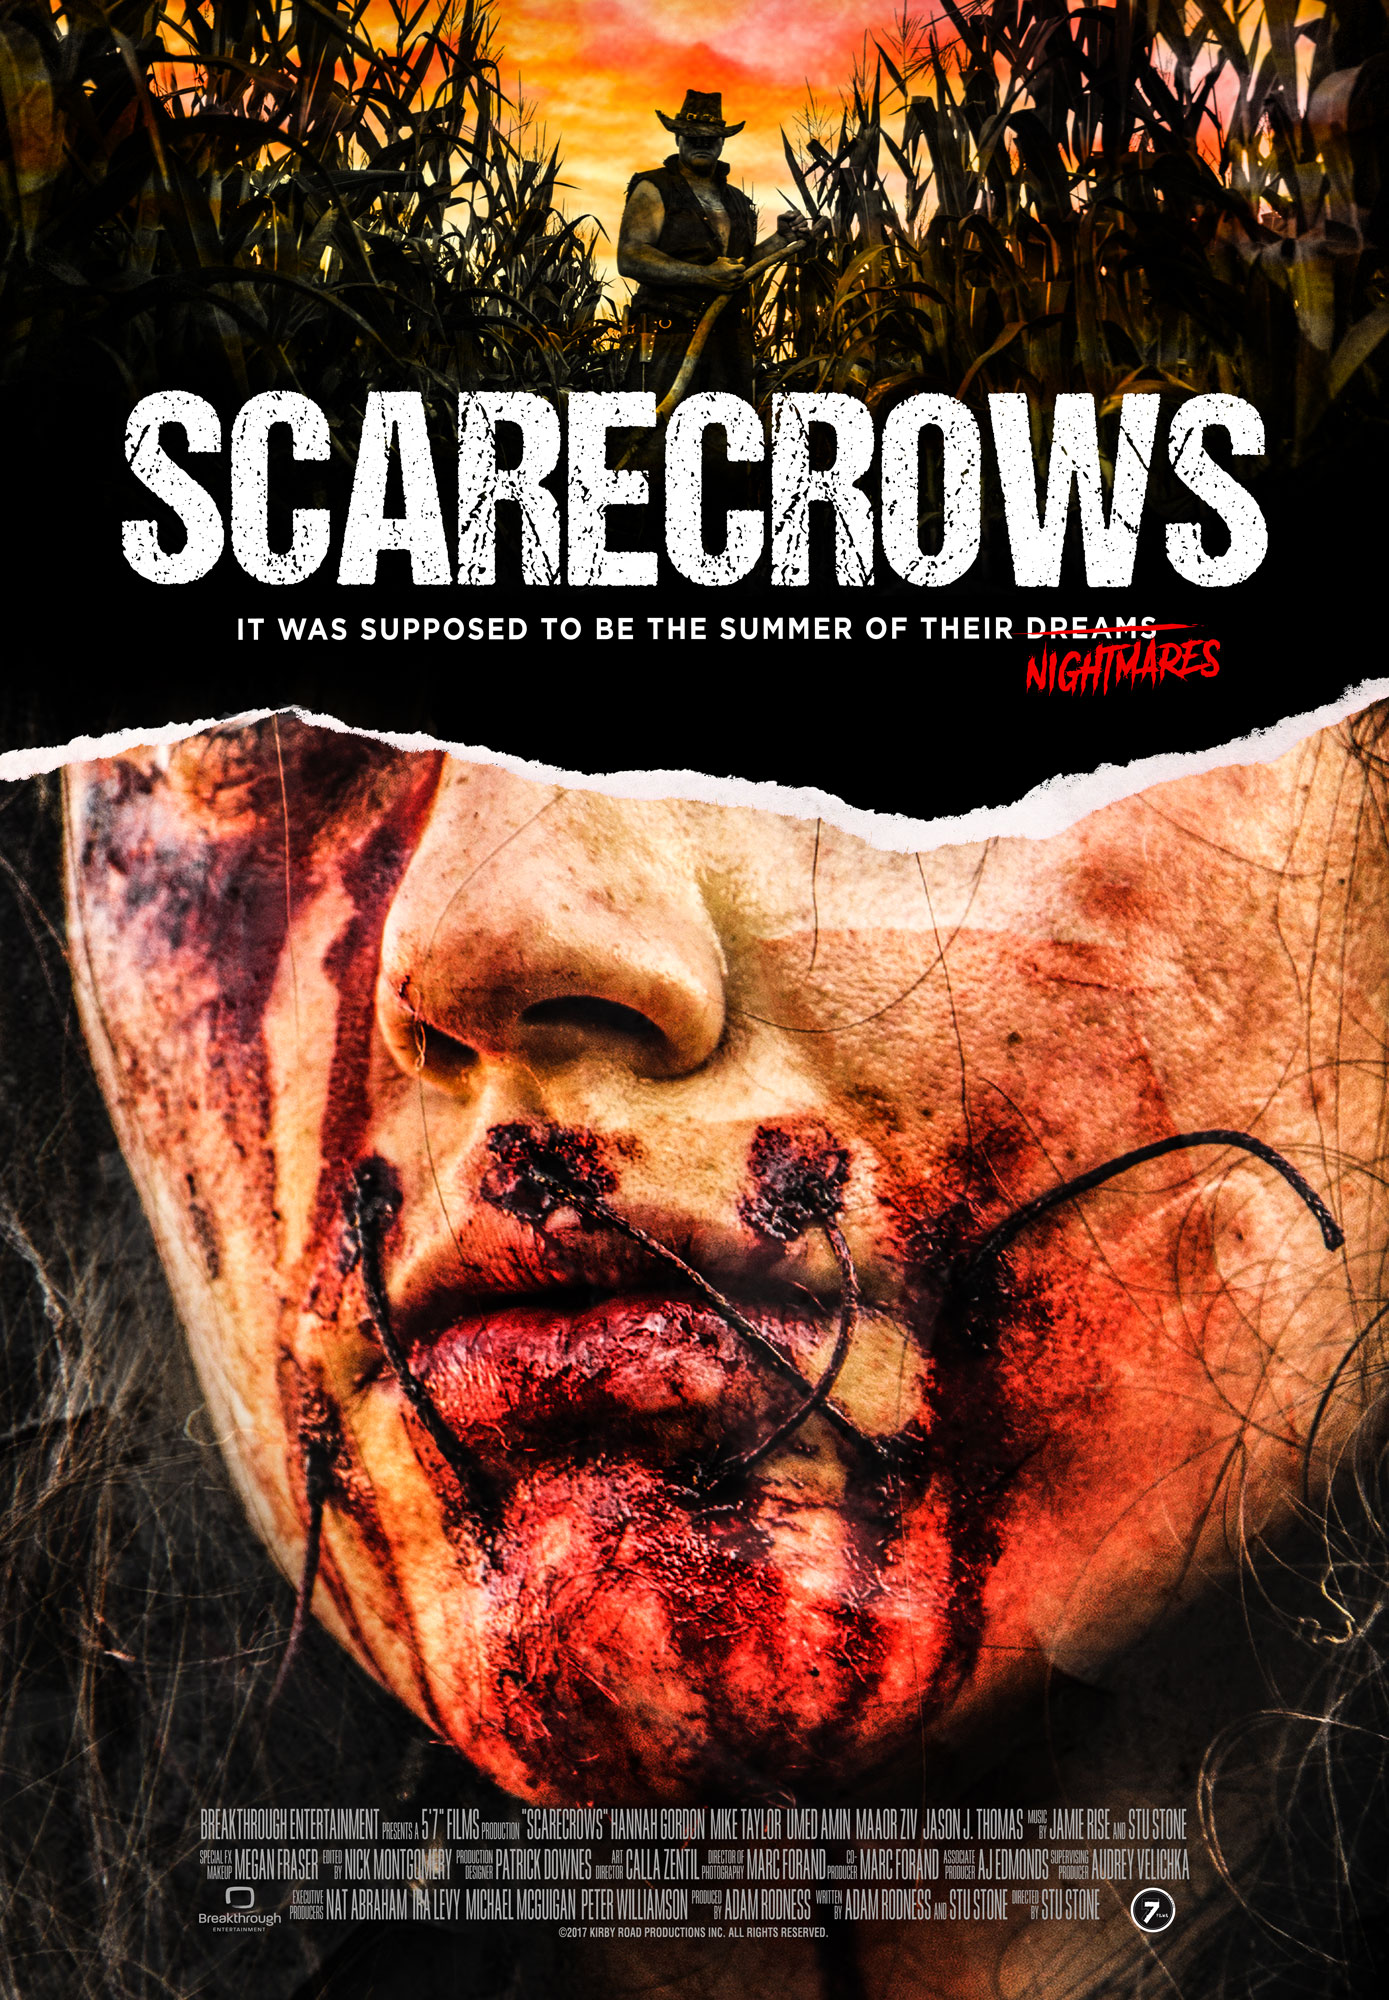 Nonton film Scarecrows layarkaca21 indoxx1 ganool online streaming terbaru